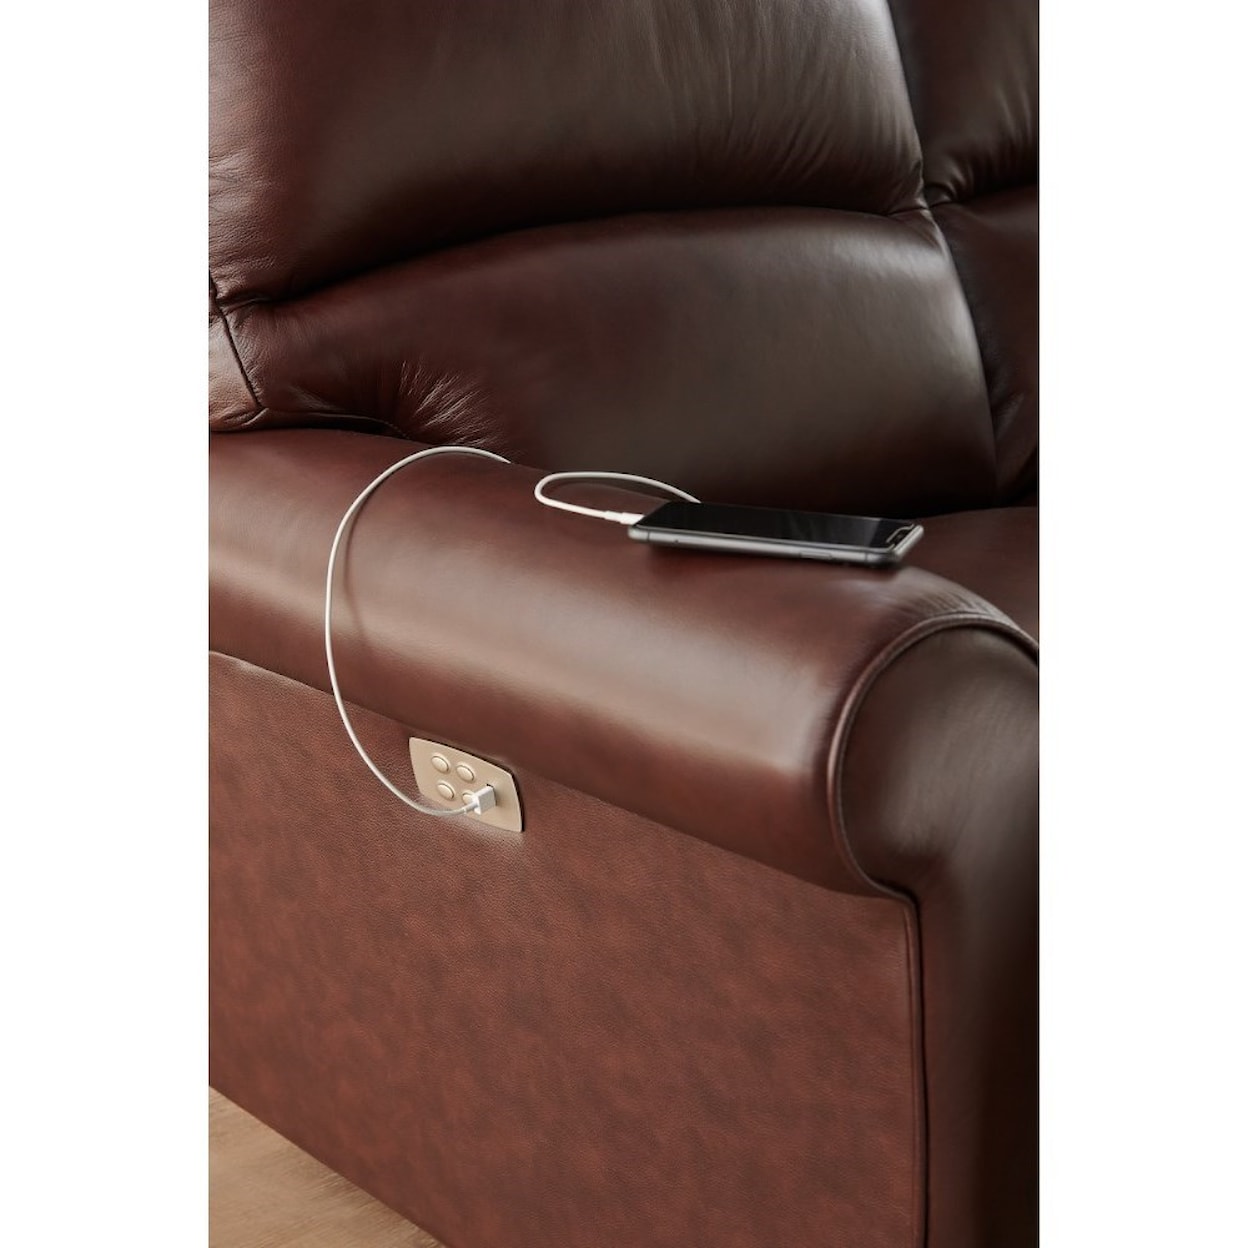 La-Z-Boy Robin Power Reclining Sofa w/ Headrest